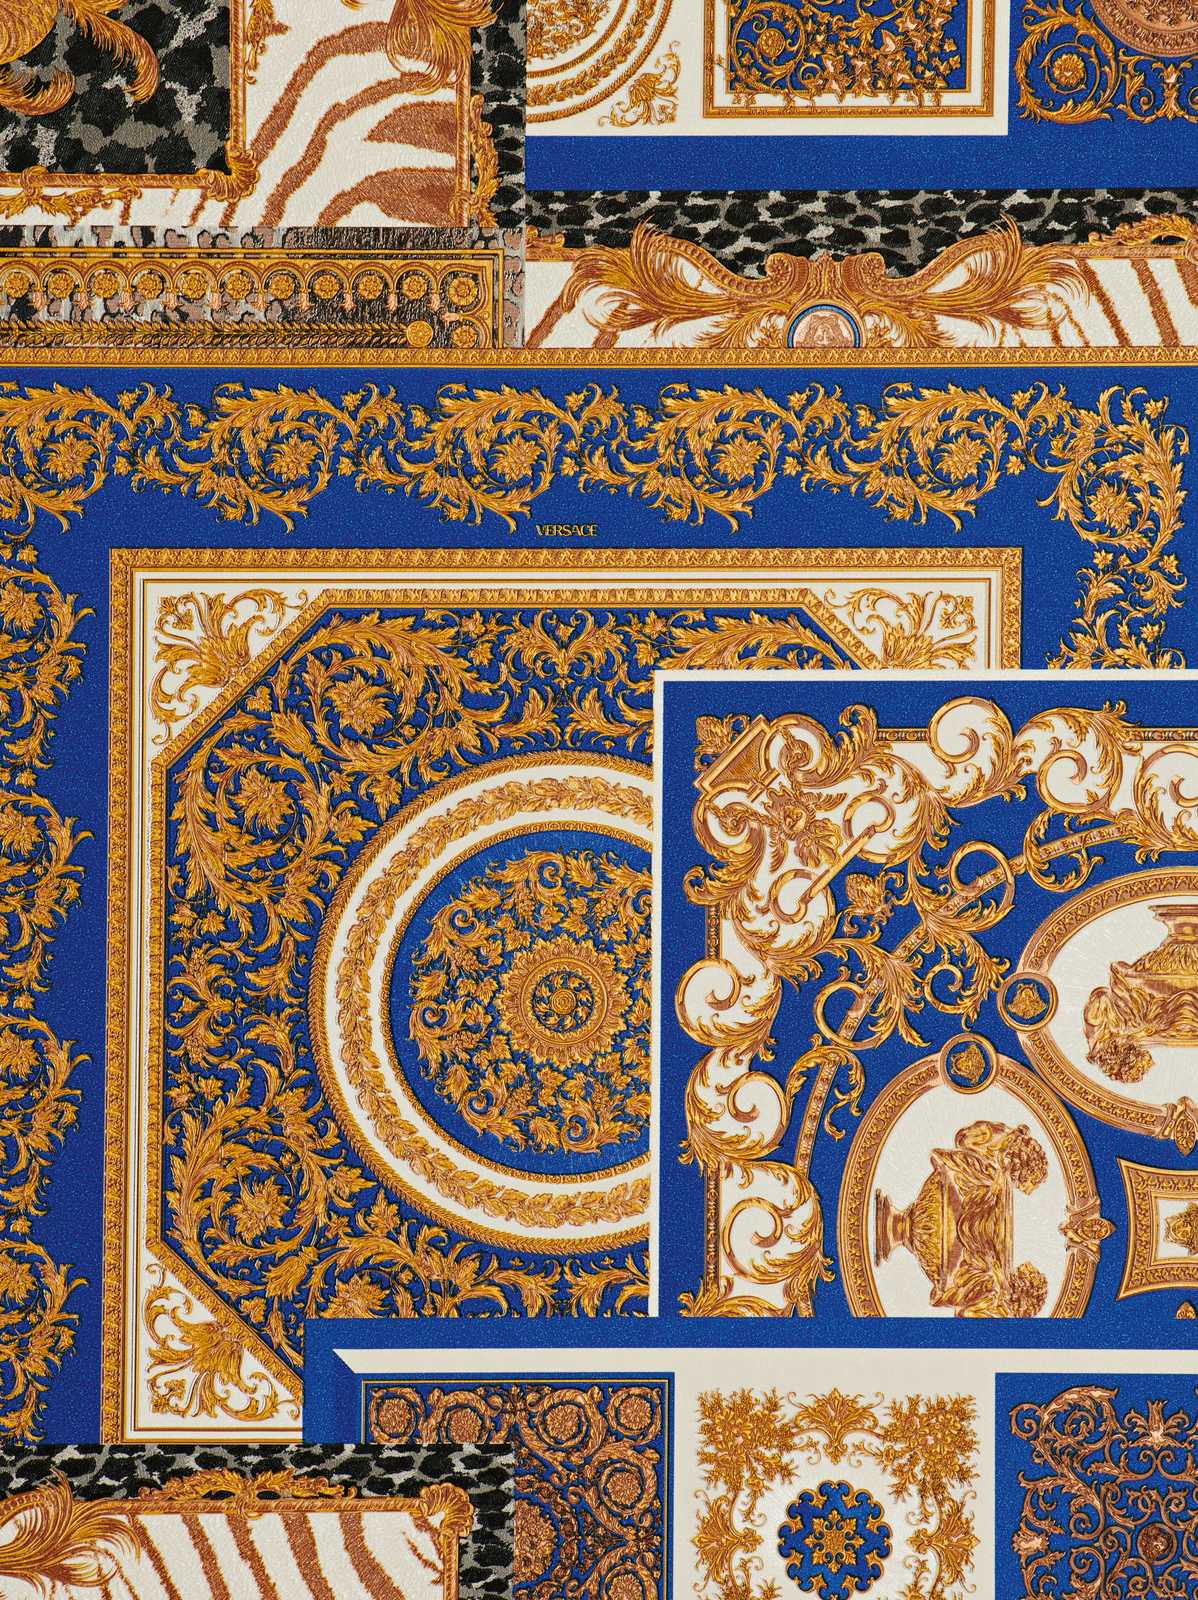             VERSACE Home behang barokke details & dierenprint - goud, blauw, wit
        